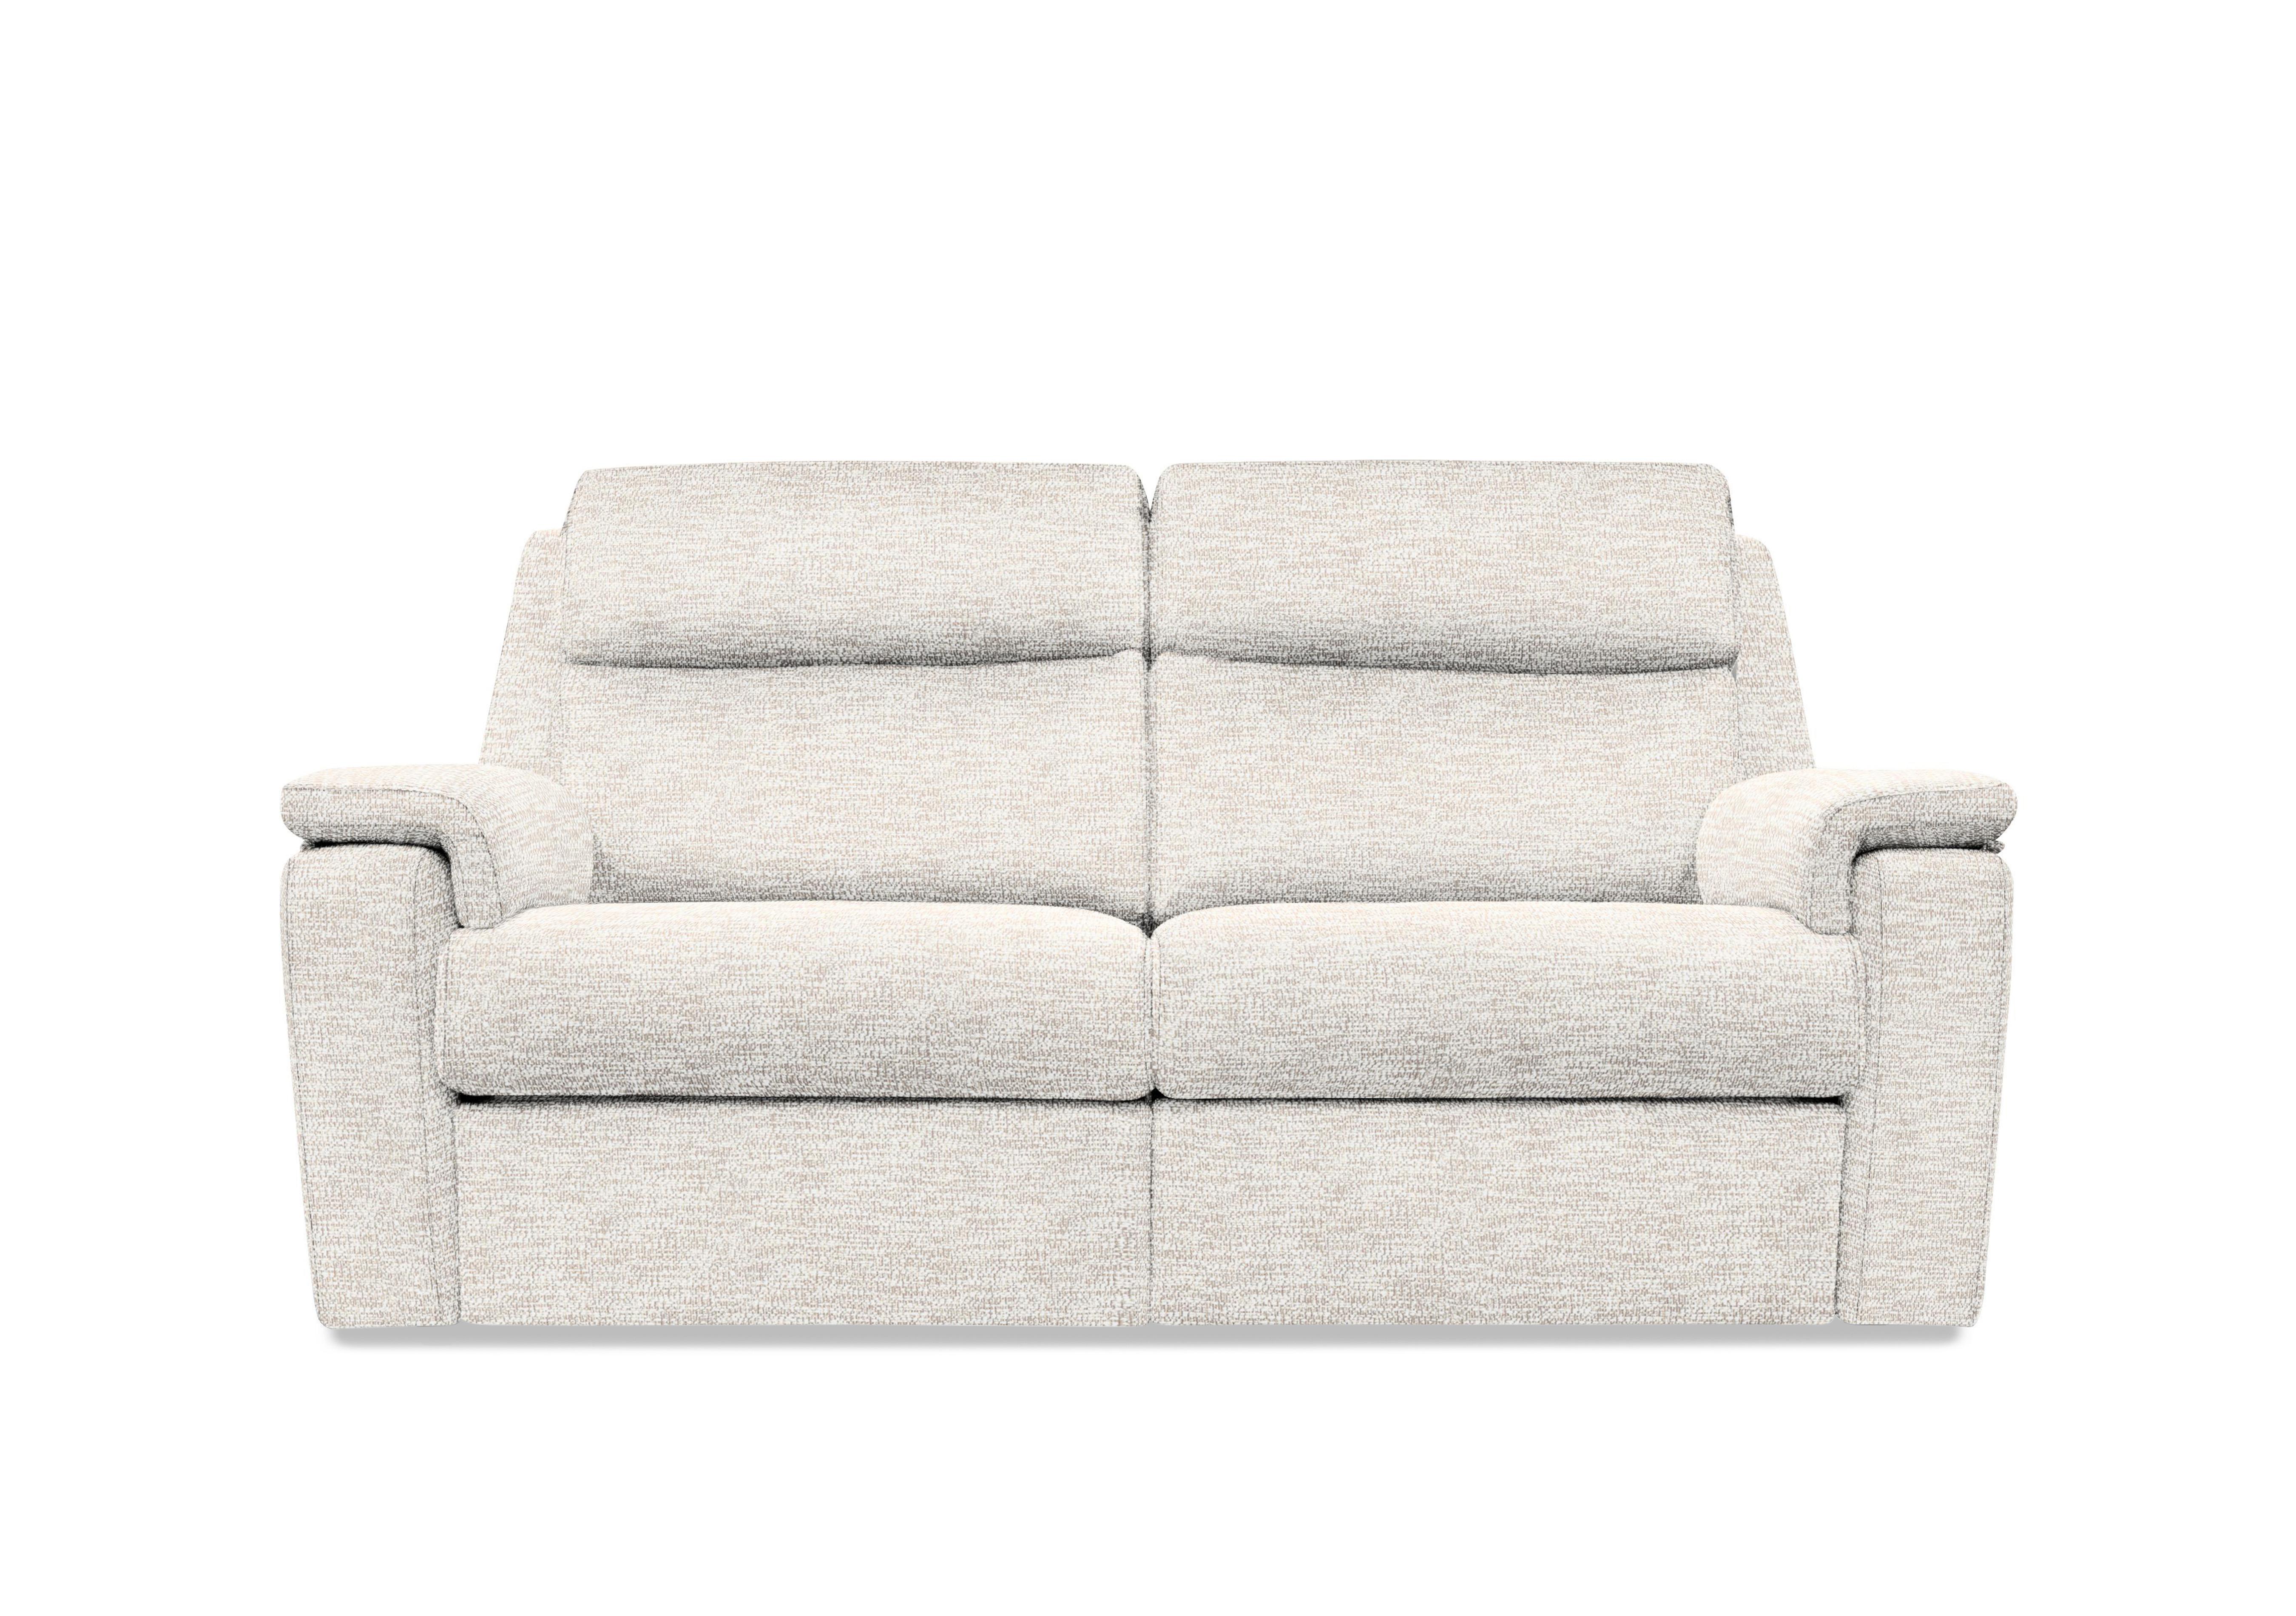 Thornbury 3 Seater Fabric Sofa in C931 Rush Cream on Furniture Village